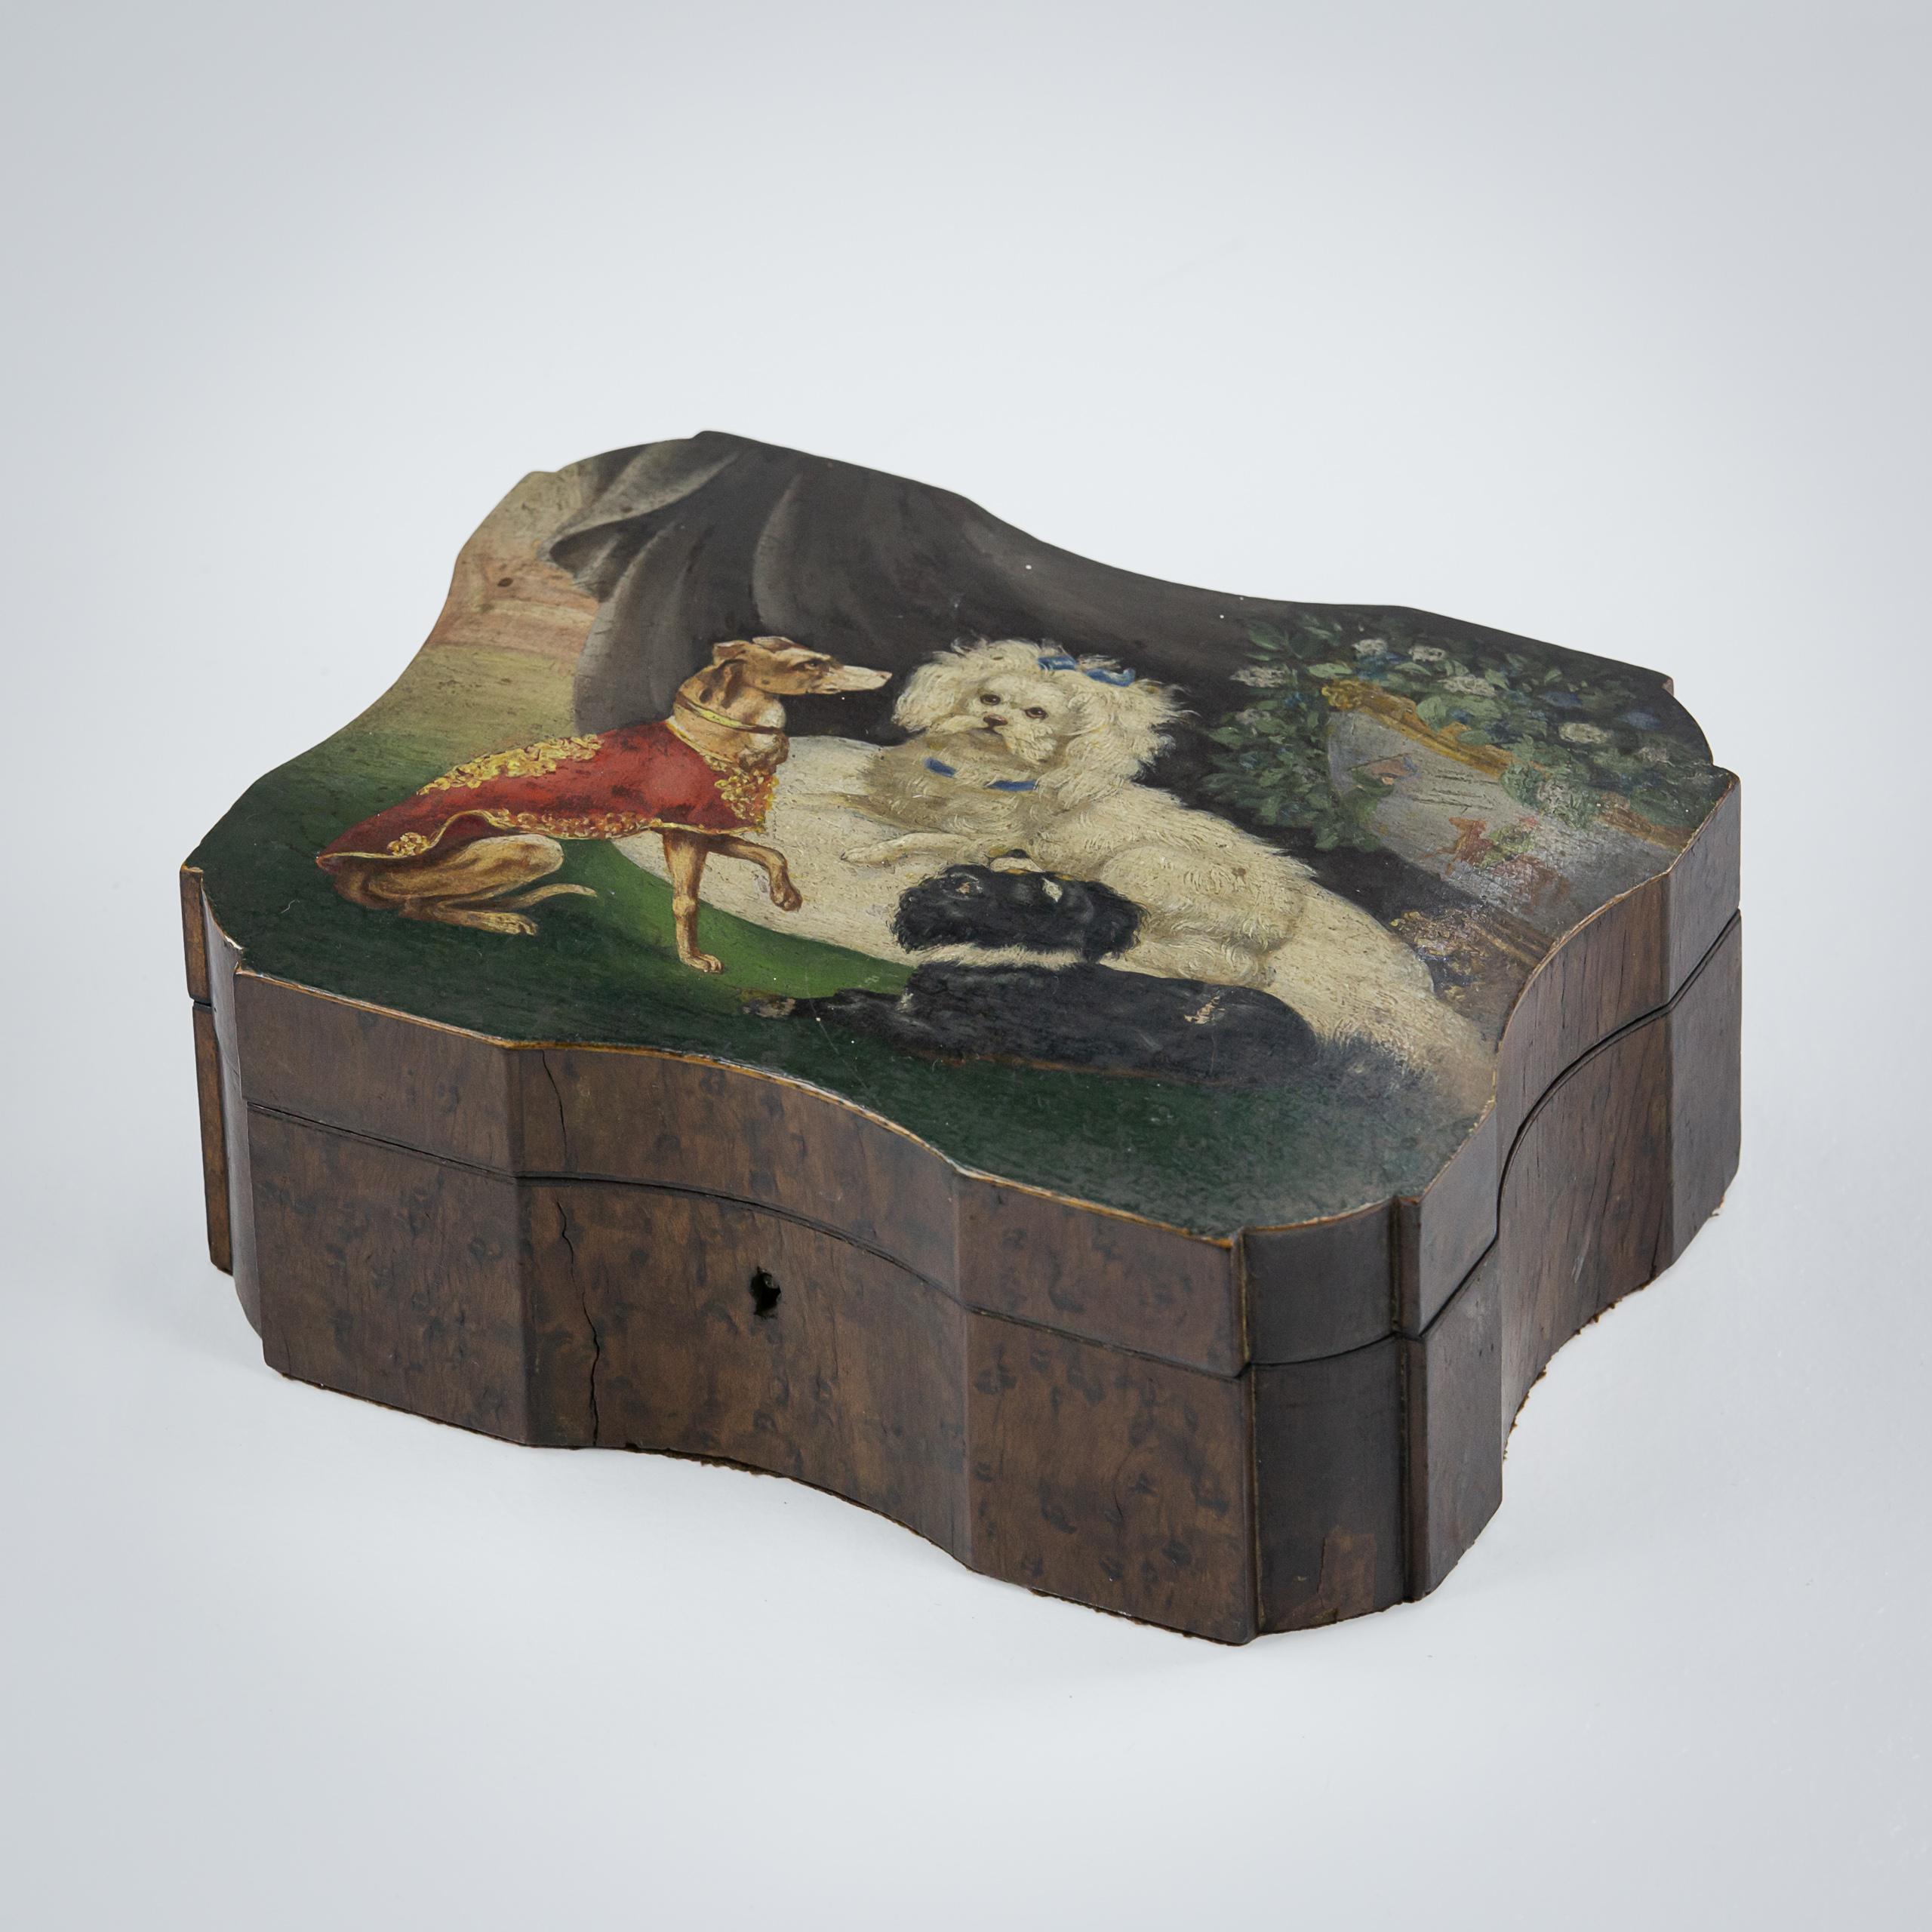 Schmuckkästchen aus Wurzelnussholz des 19. Jahrhunderts, bemerkenswert bemaltes Oberteil mit drei Hunden, von denen sich der stolzeste in ein Kissen schmiegt, umgeben von feiner Draperie und einer überquellenden Chinoiserie-Vase. Wahrscheinlich